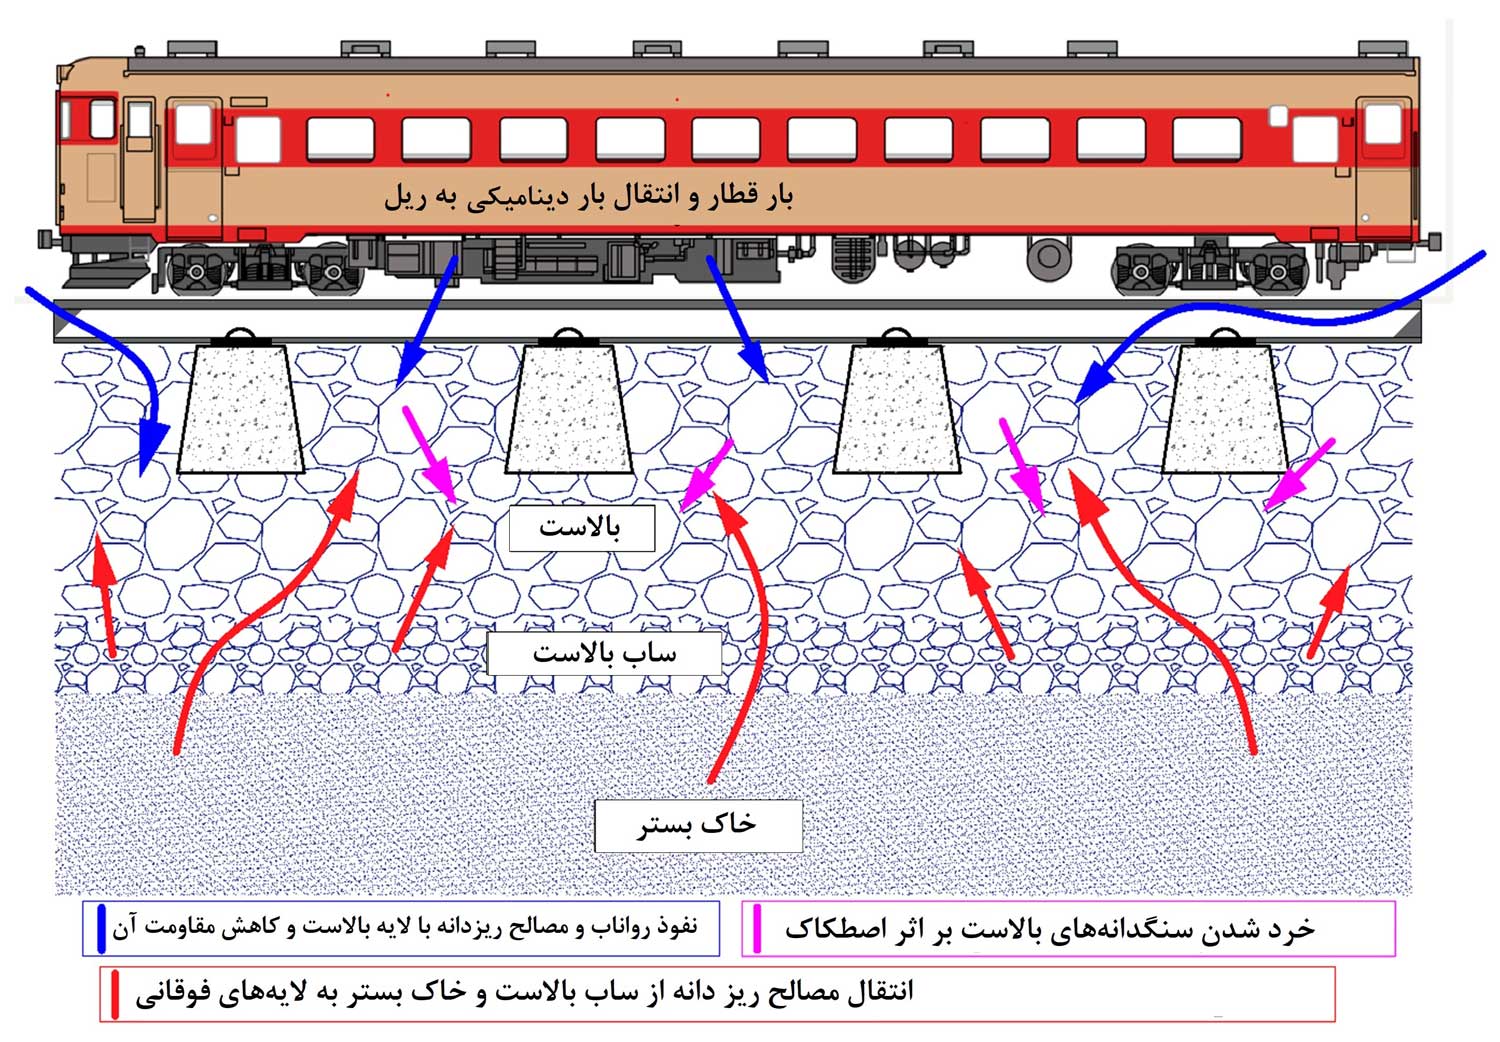 شماتیک نیروهای وارد بر زیرسازی راه آهن به هنگام عبور قطار: